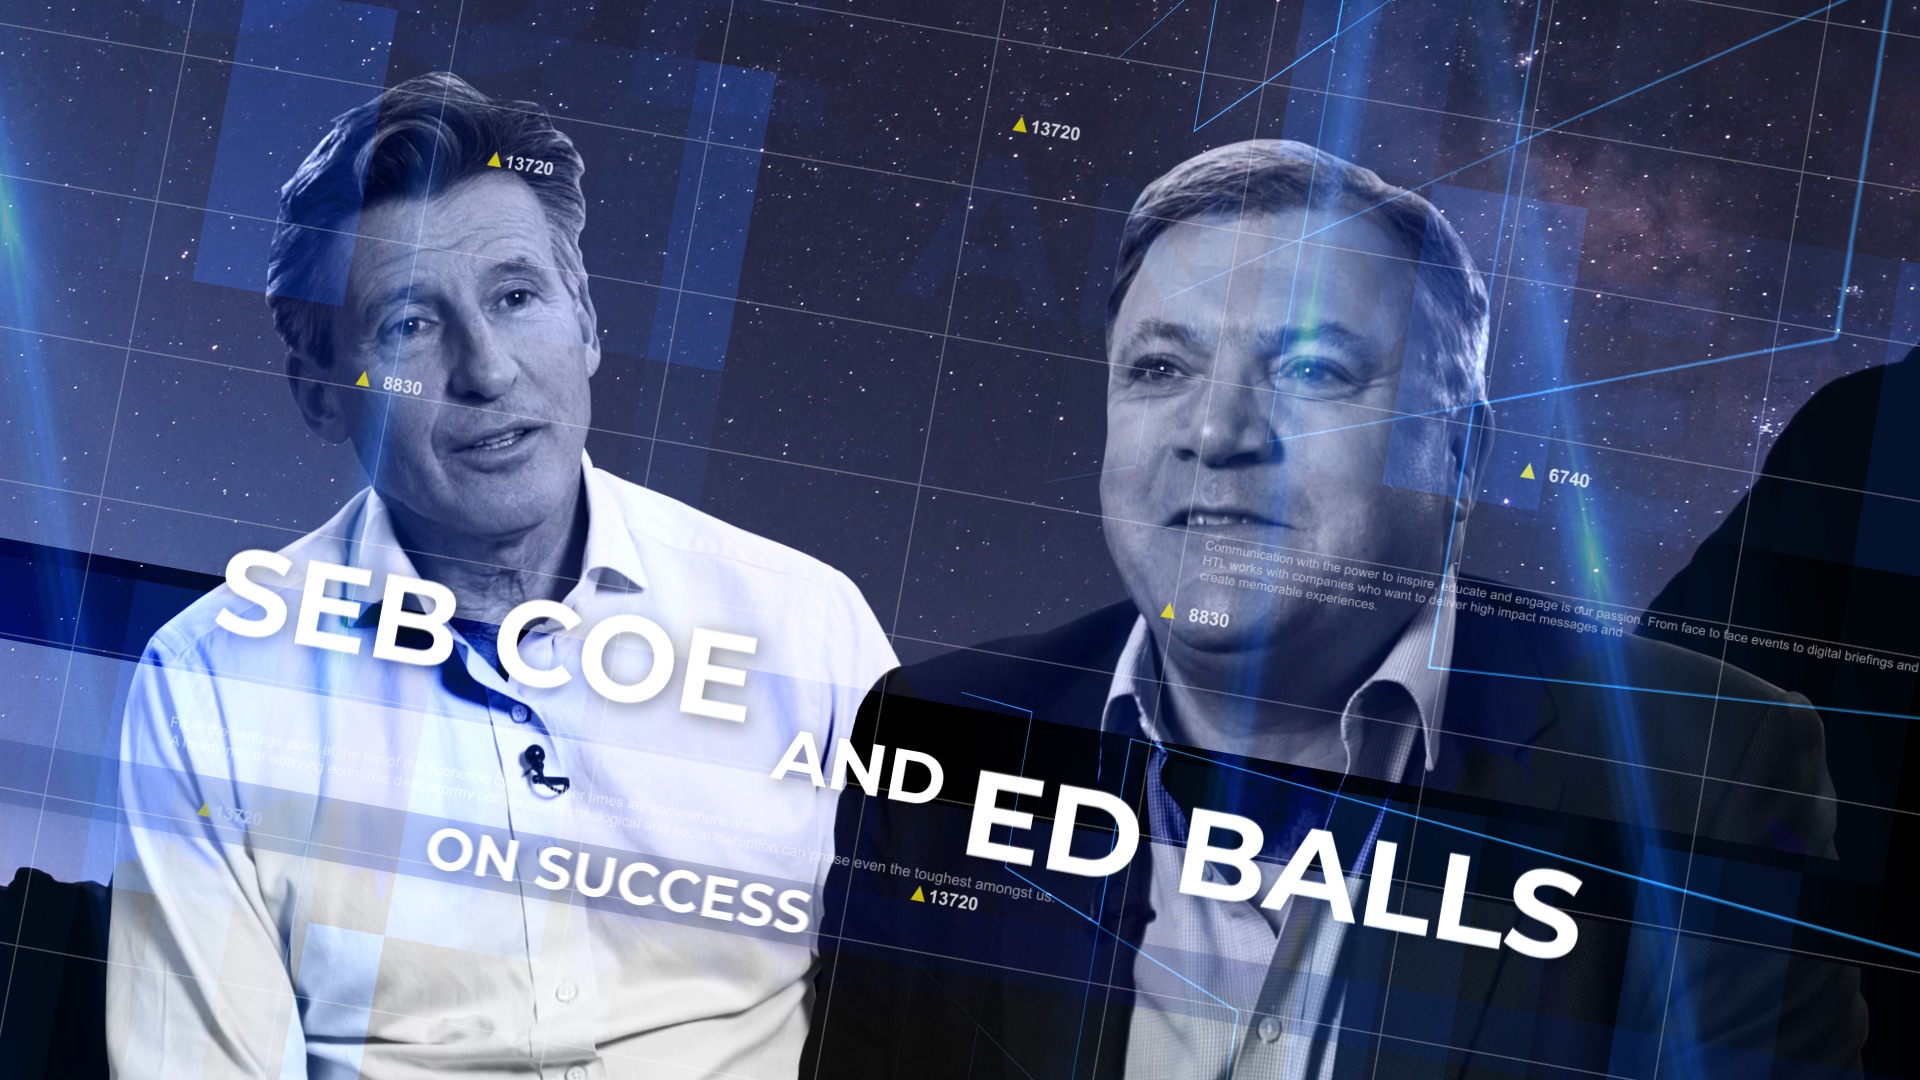 Seb Coe and Ed Balls on success